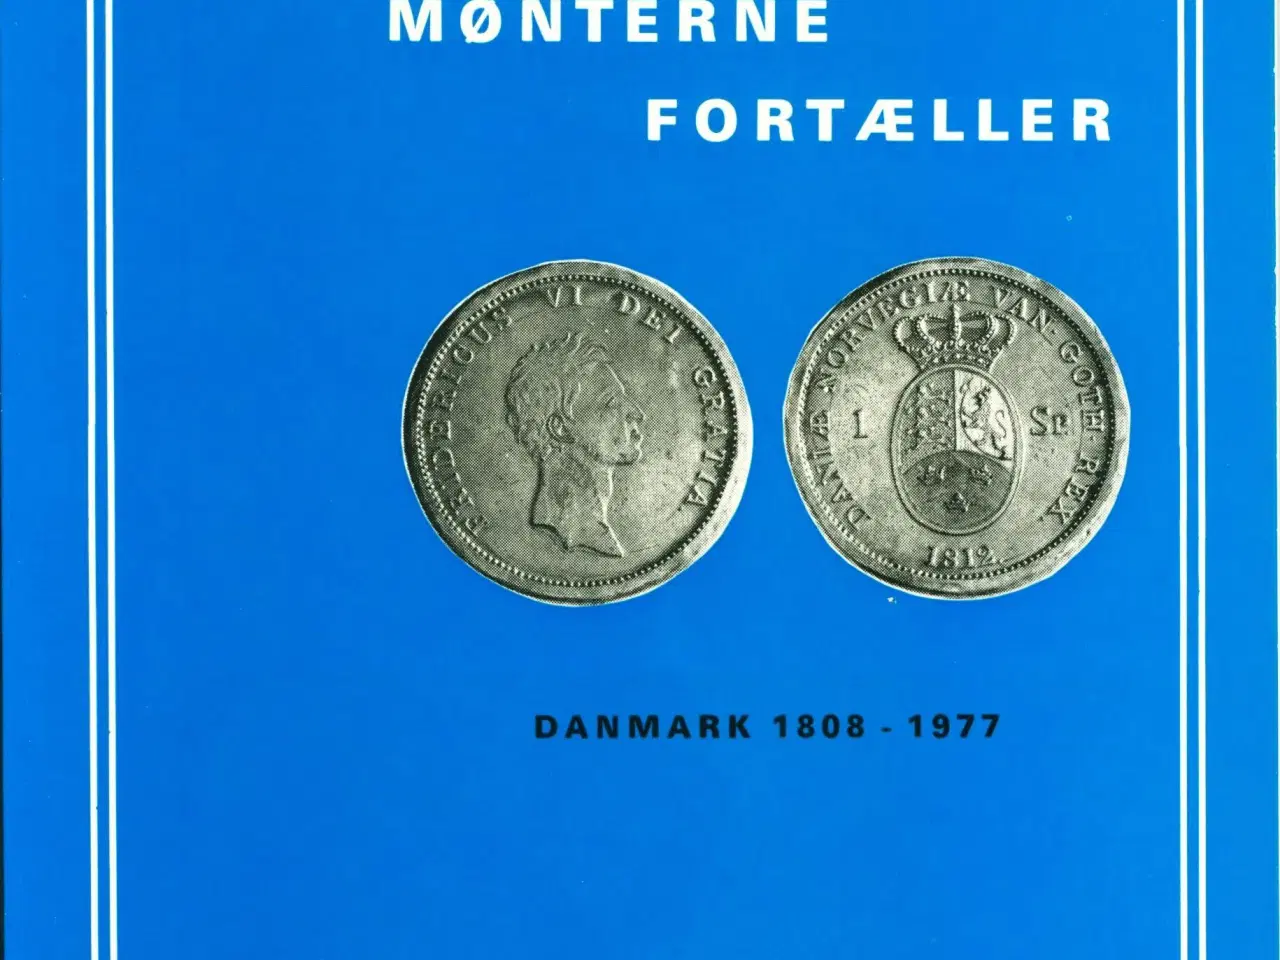 Billede 1 - Mønterne fortæller, 1977